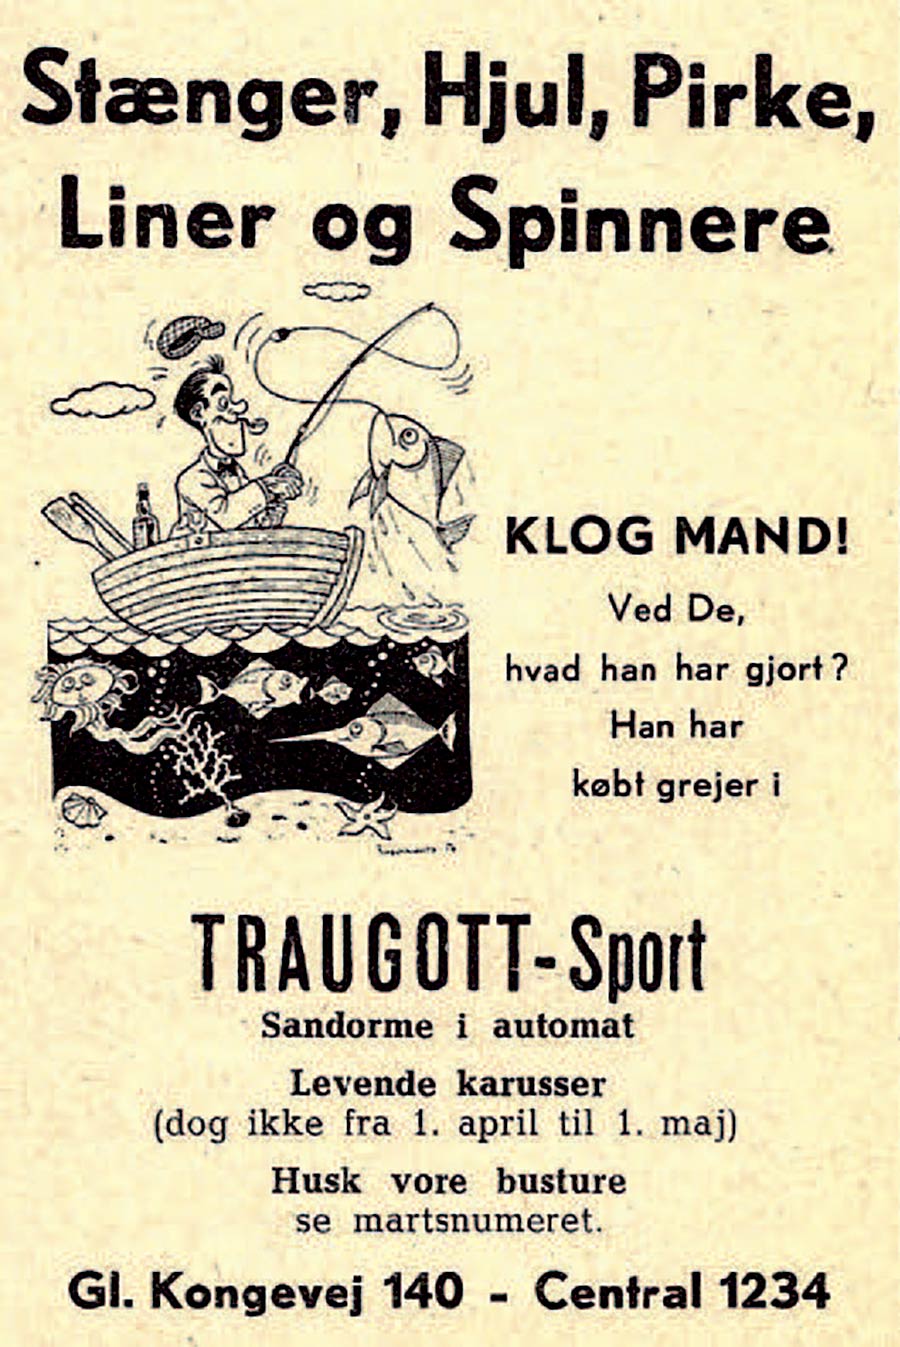 På Frederiksberg kunne manogså trække sandorm i automaten, selvom det ikke var annoncens vigtigste budskab, men det skulle lige med i rubrikannoncen, da det var en service for kunderne.